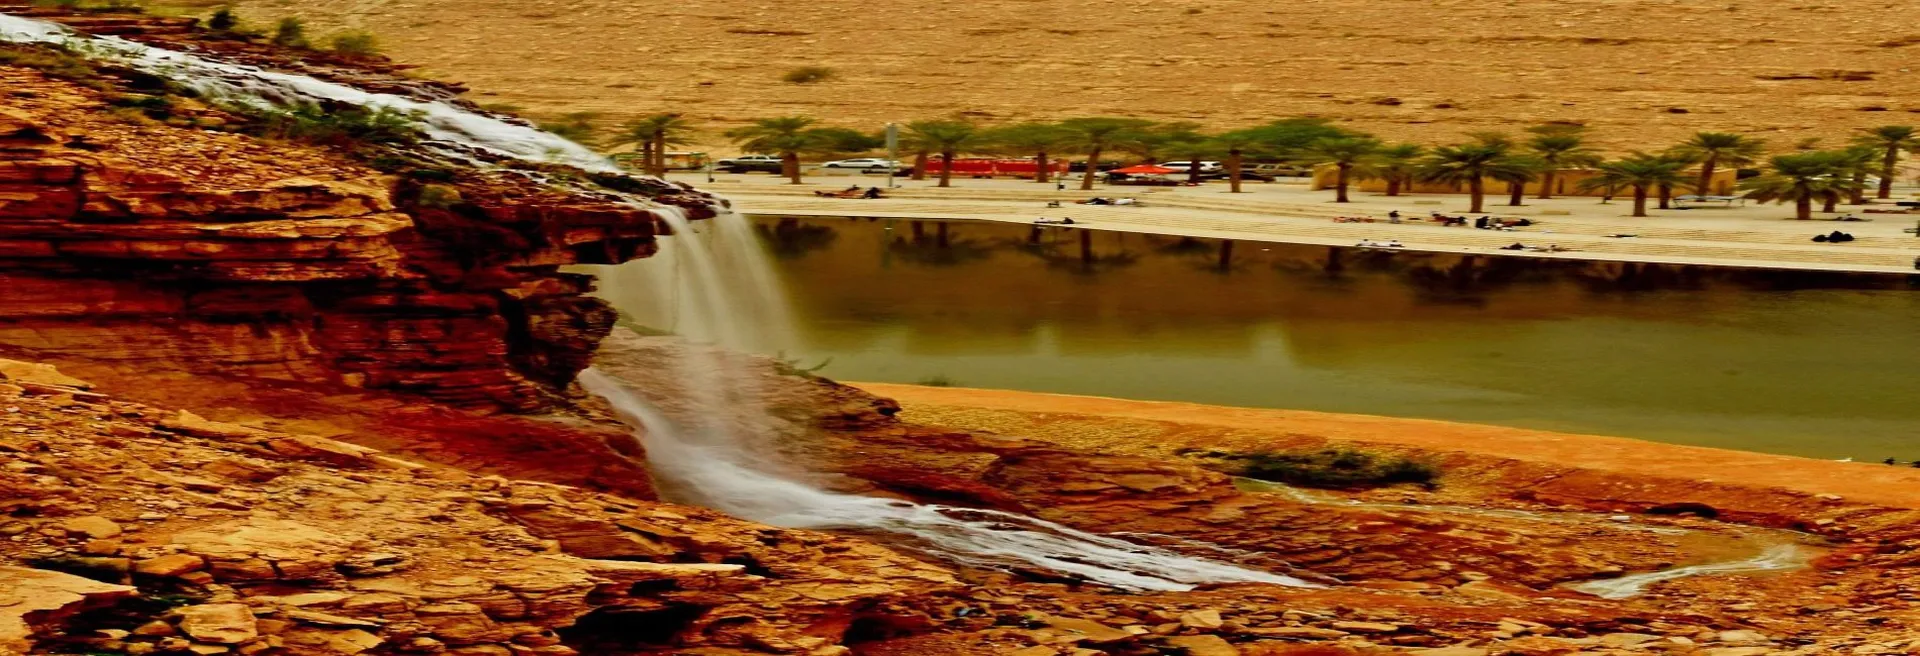 Wadi Namar